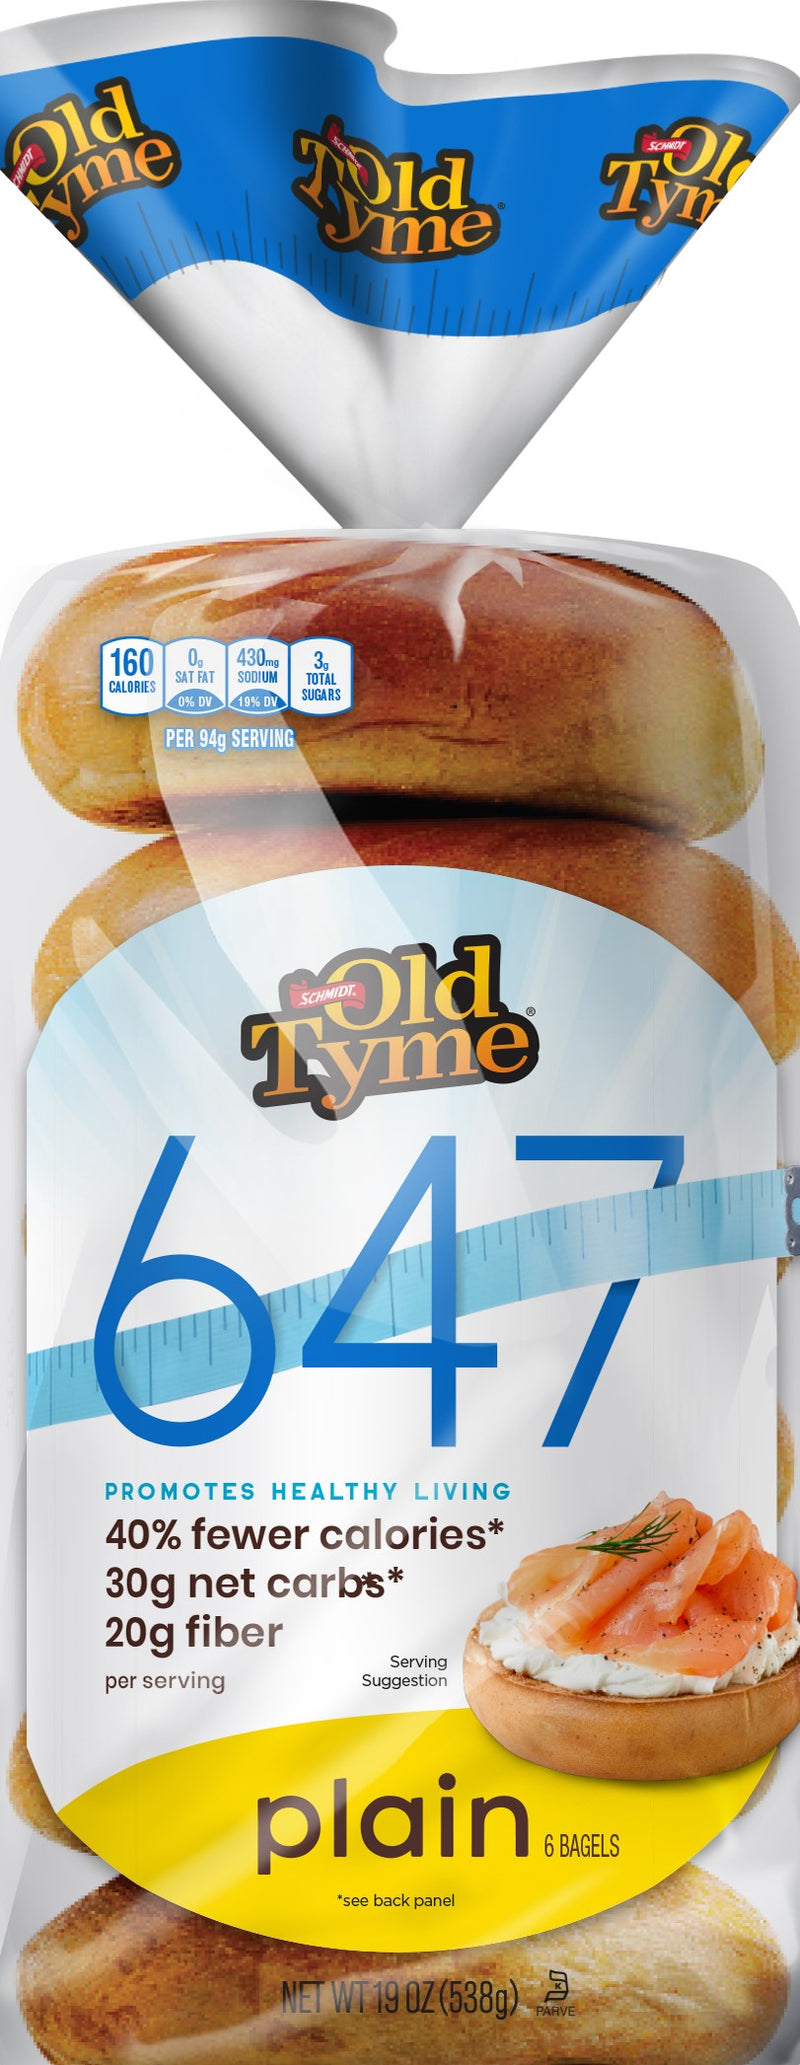 Schmidt / Old Tyme 647 Bagels 6 bagels 